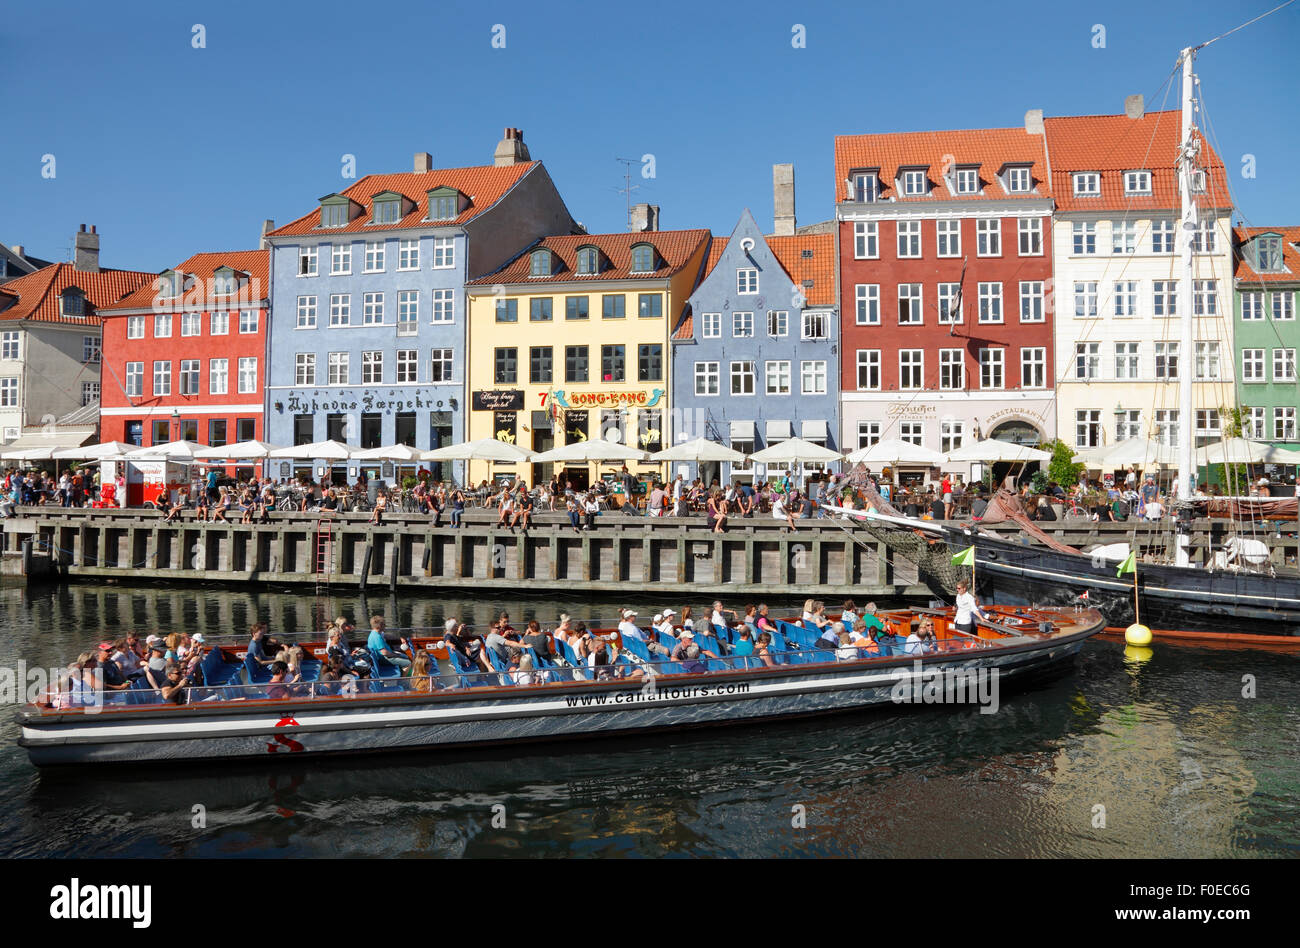 Bateau visite du canal de Nyhavn dans la foule tournant autour d'un jour d'été chaud et ensoleillé plein de touristes et visiteurs aussi sur le quai. Visite croisière sur le canal. Banque D'Images